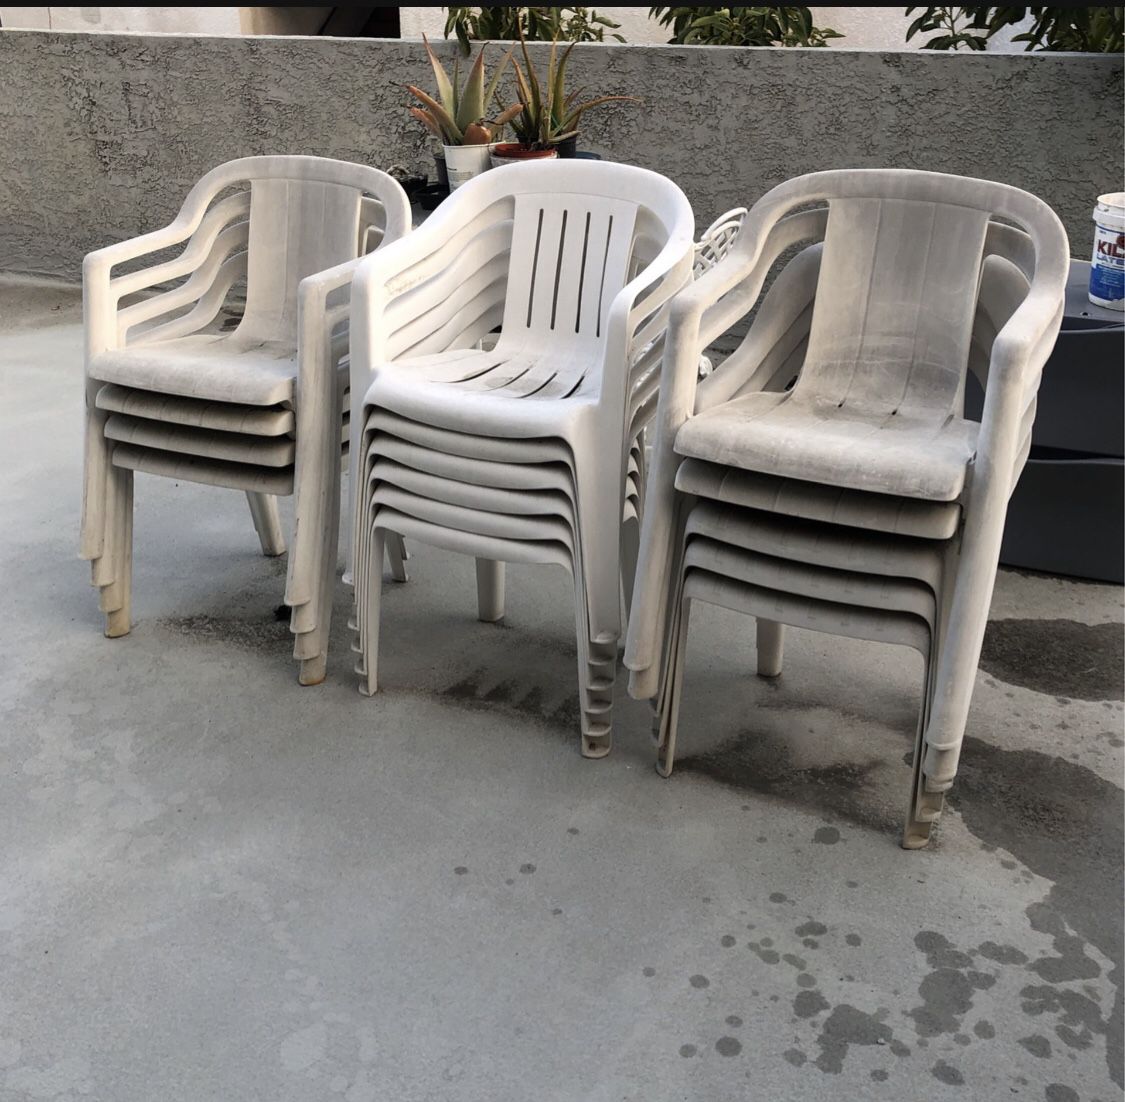 15pcs. Plastic Chairs